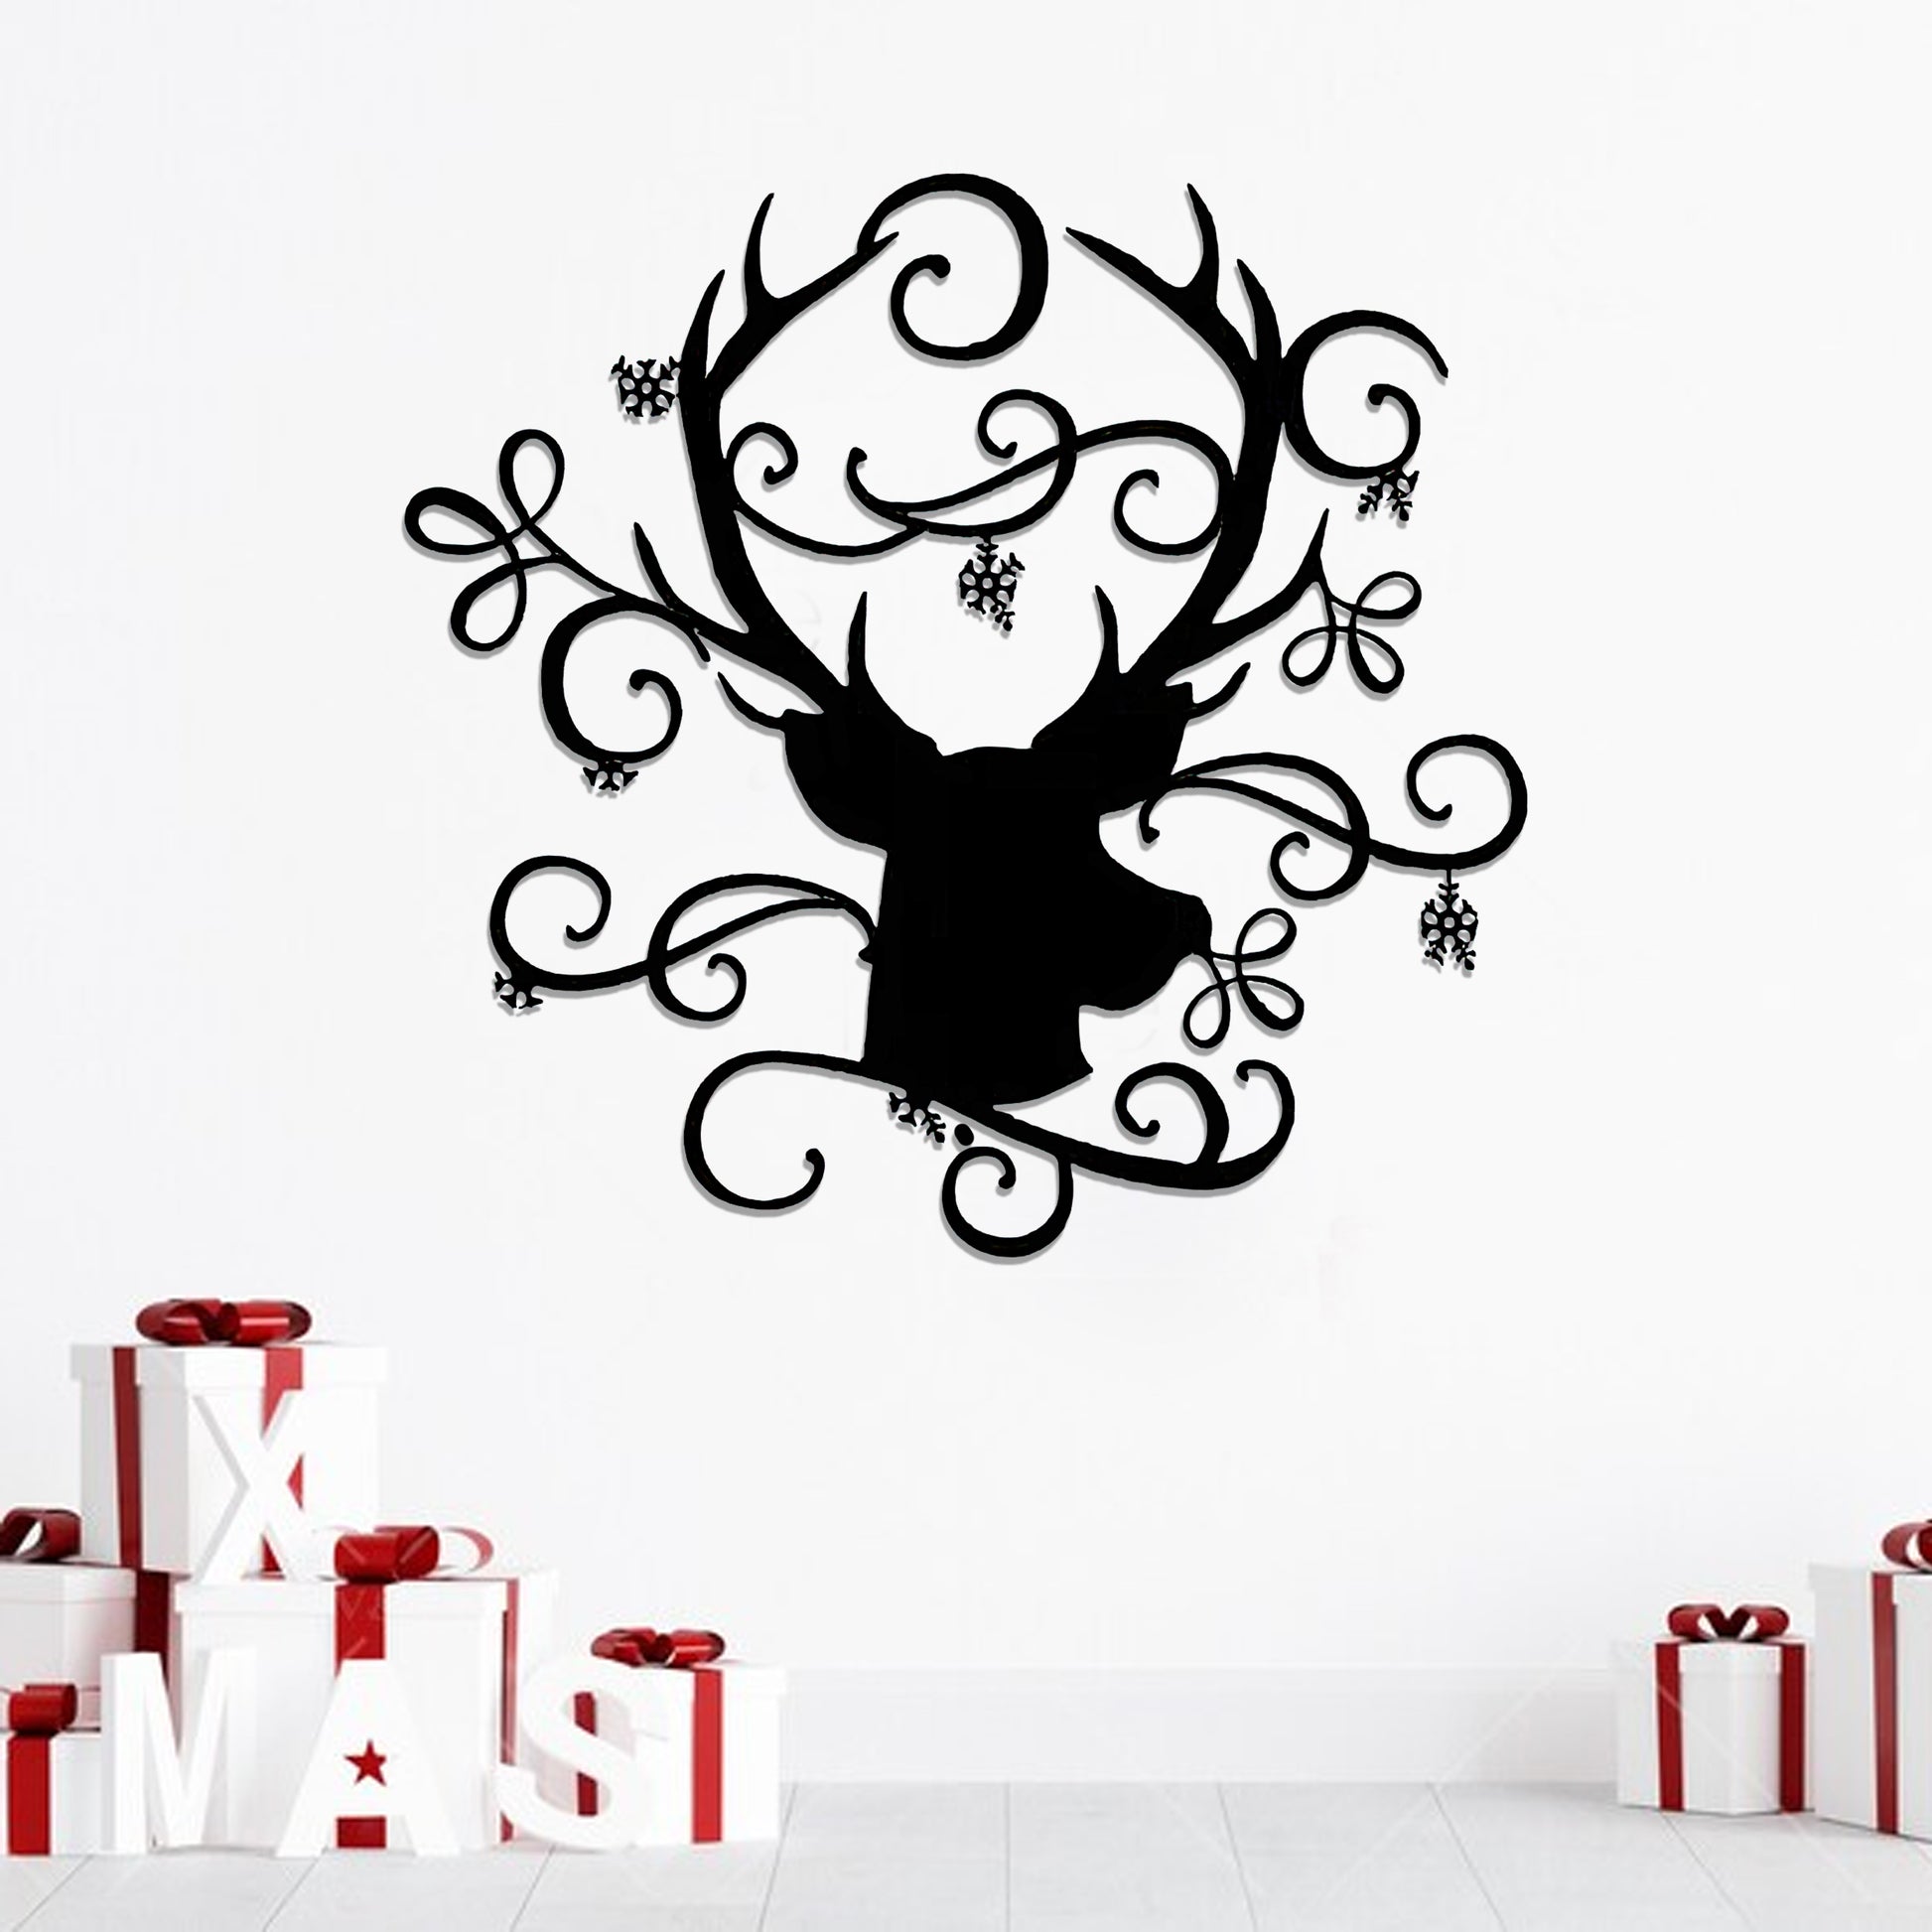 Deer Christmas Metal Wall Art - Deer Metal Sign - Santa Sleigh - Ciaocustom